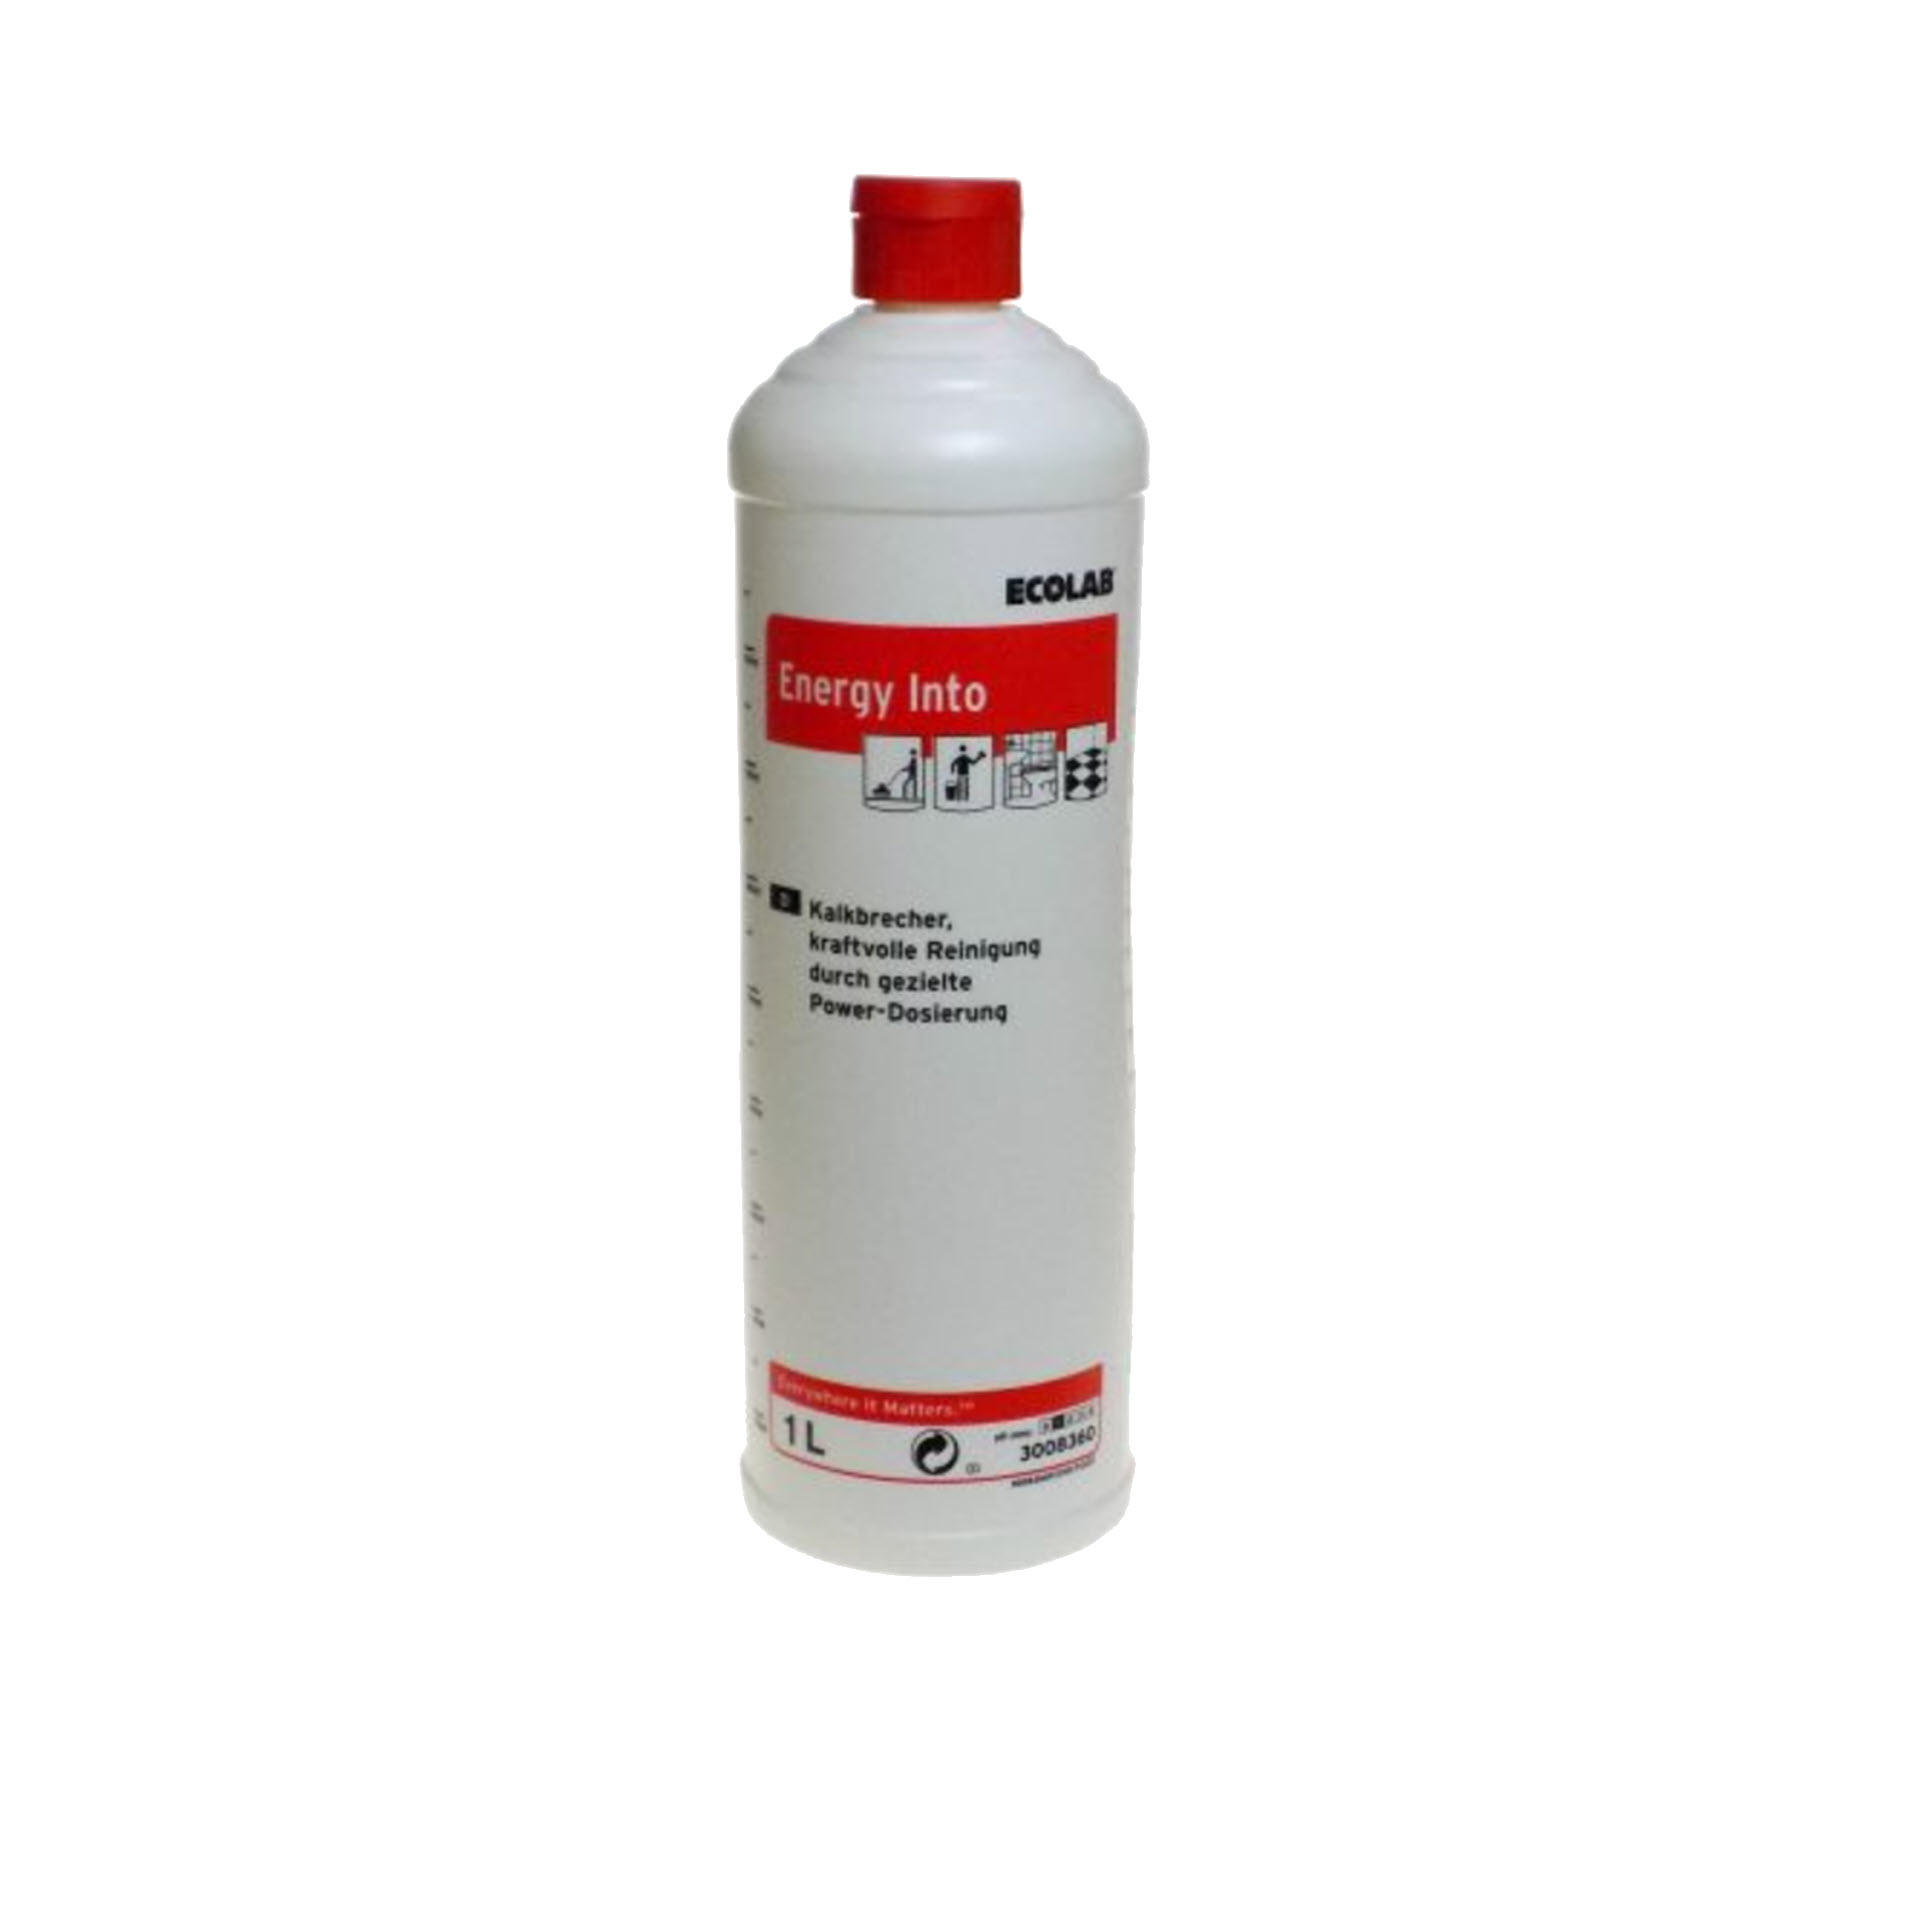 ECOLAB Energy-Into® Sanitärreiniger & Kalkbrecher - 1 Liter Rundflasche